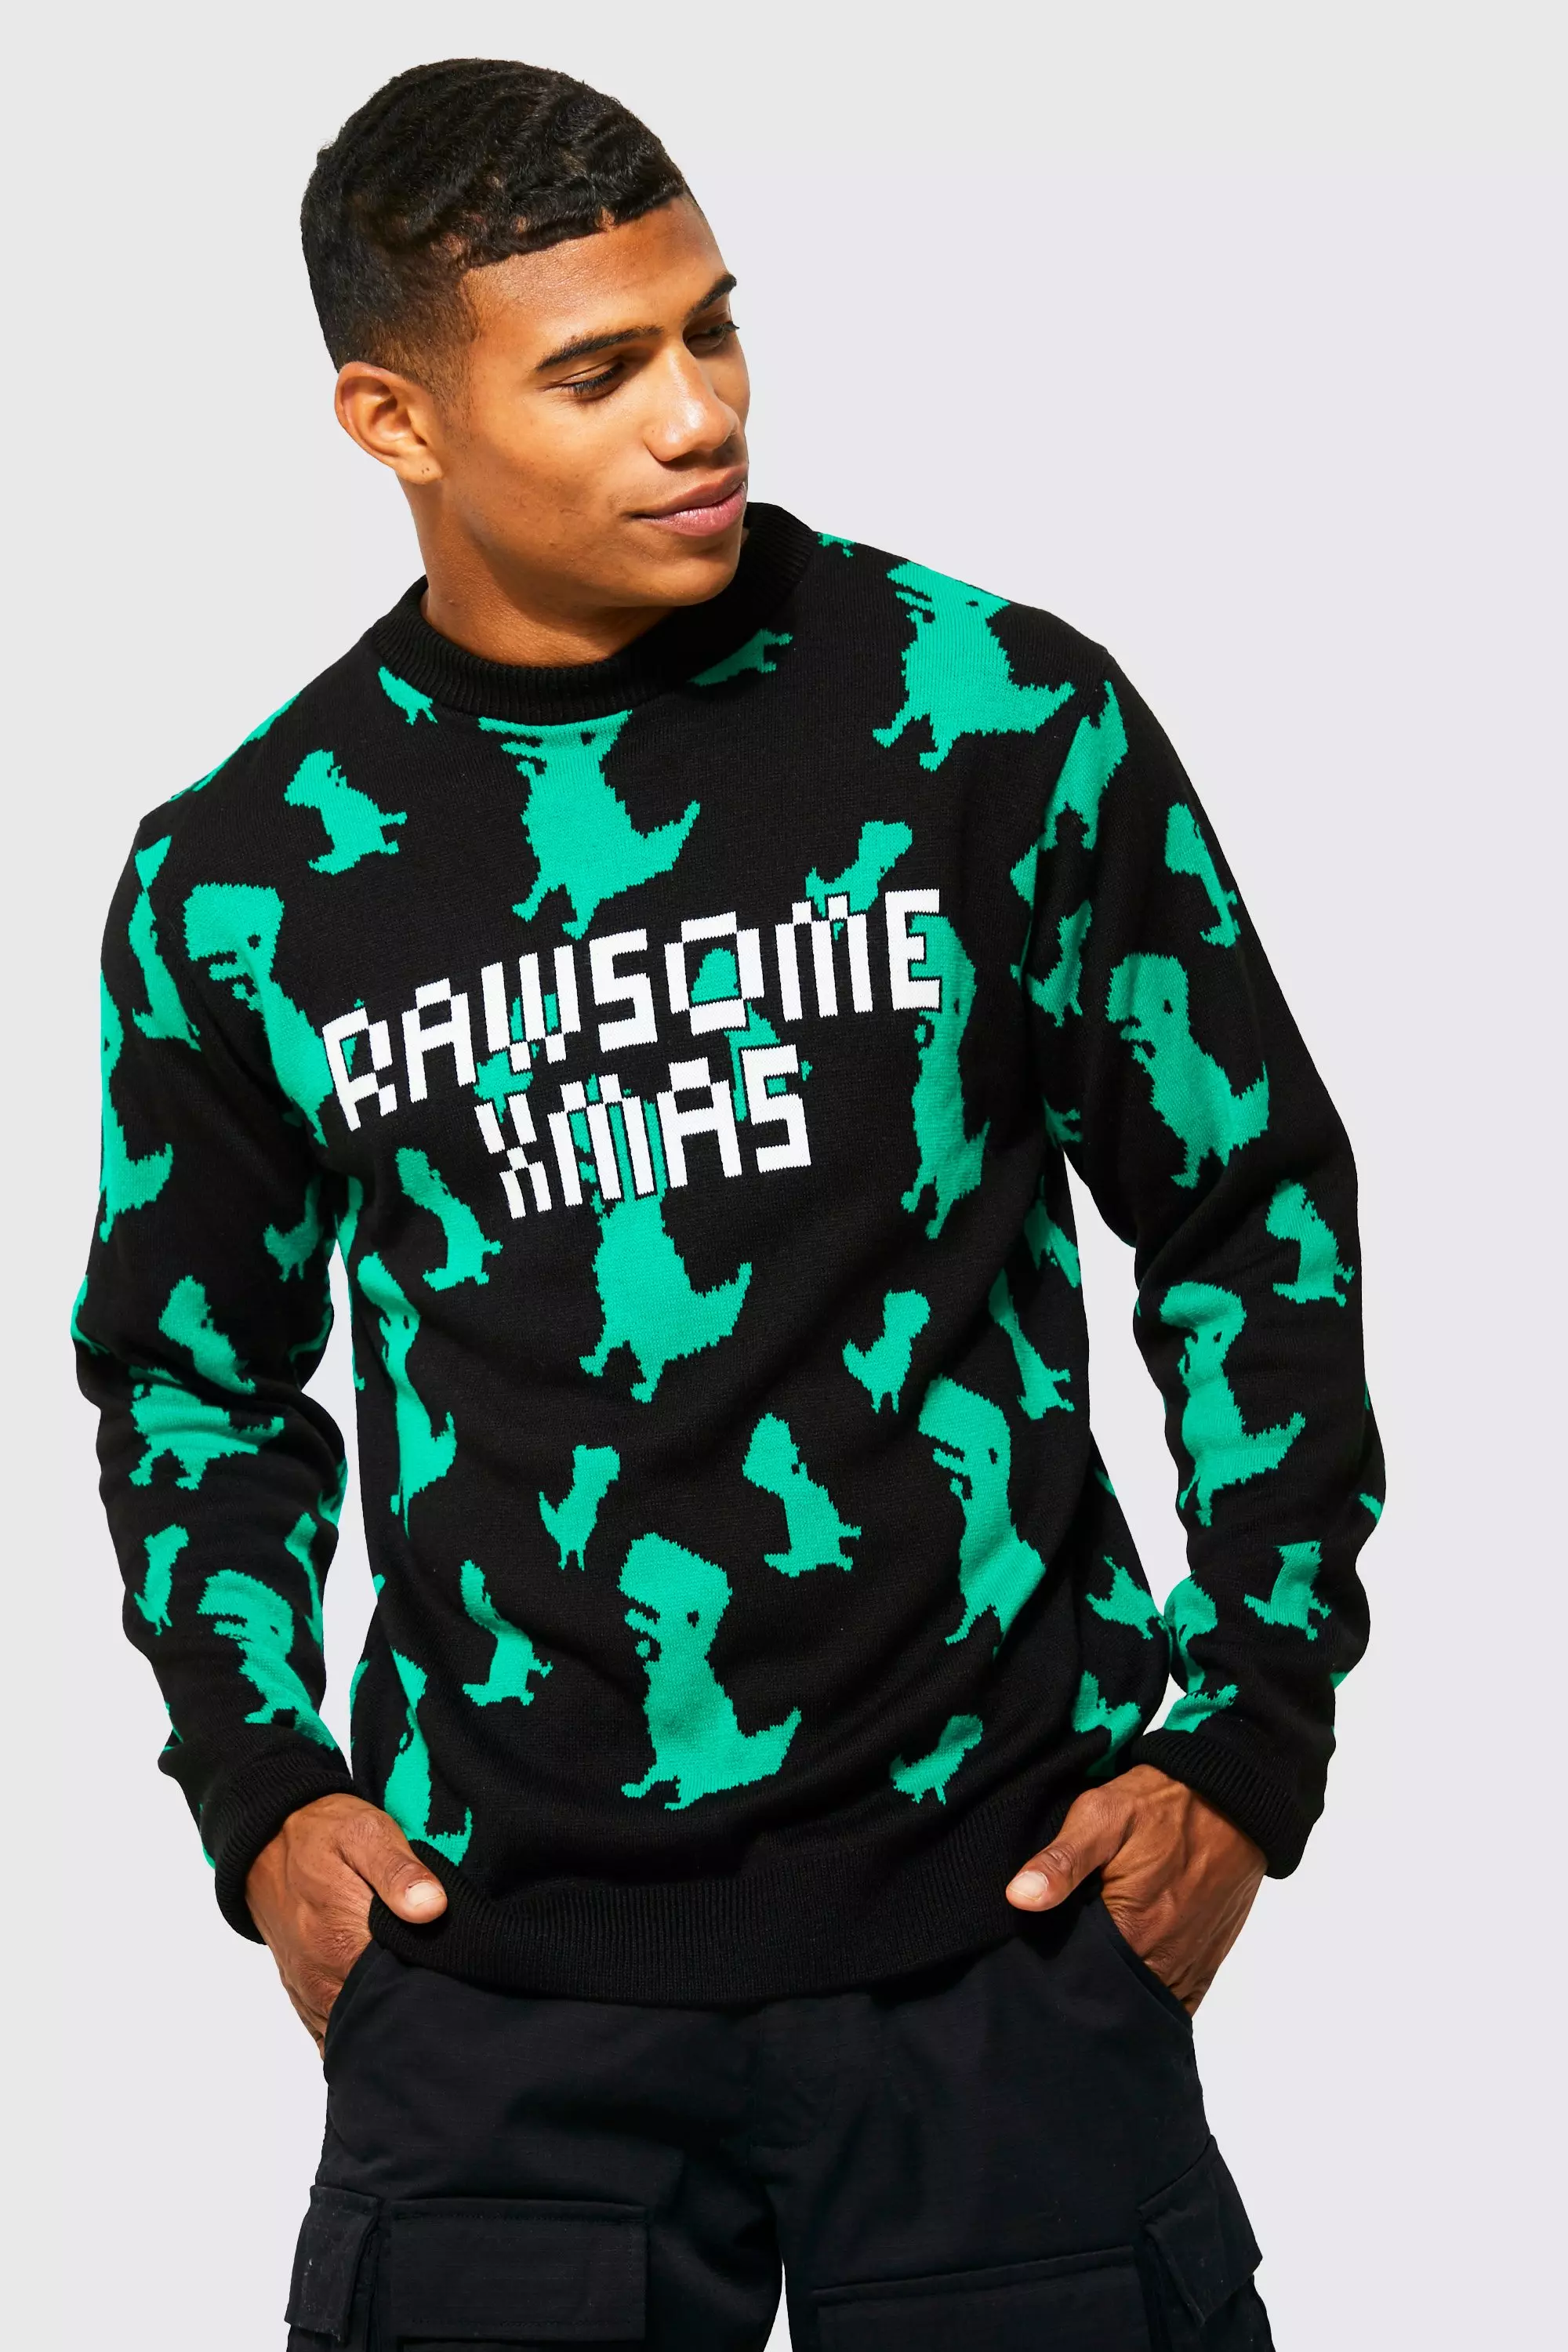 Black Rawsome Xmas Christmas Sweater